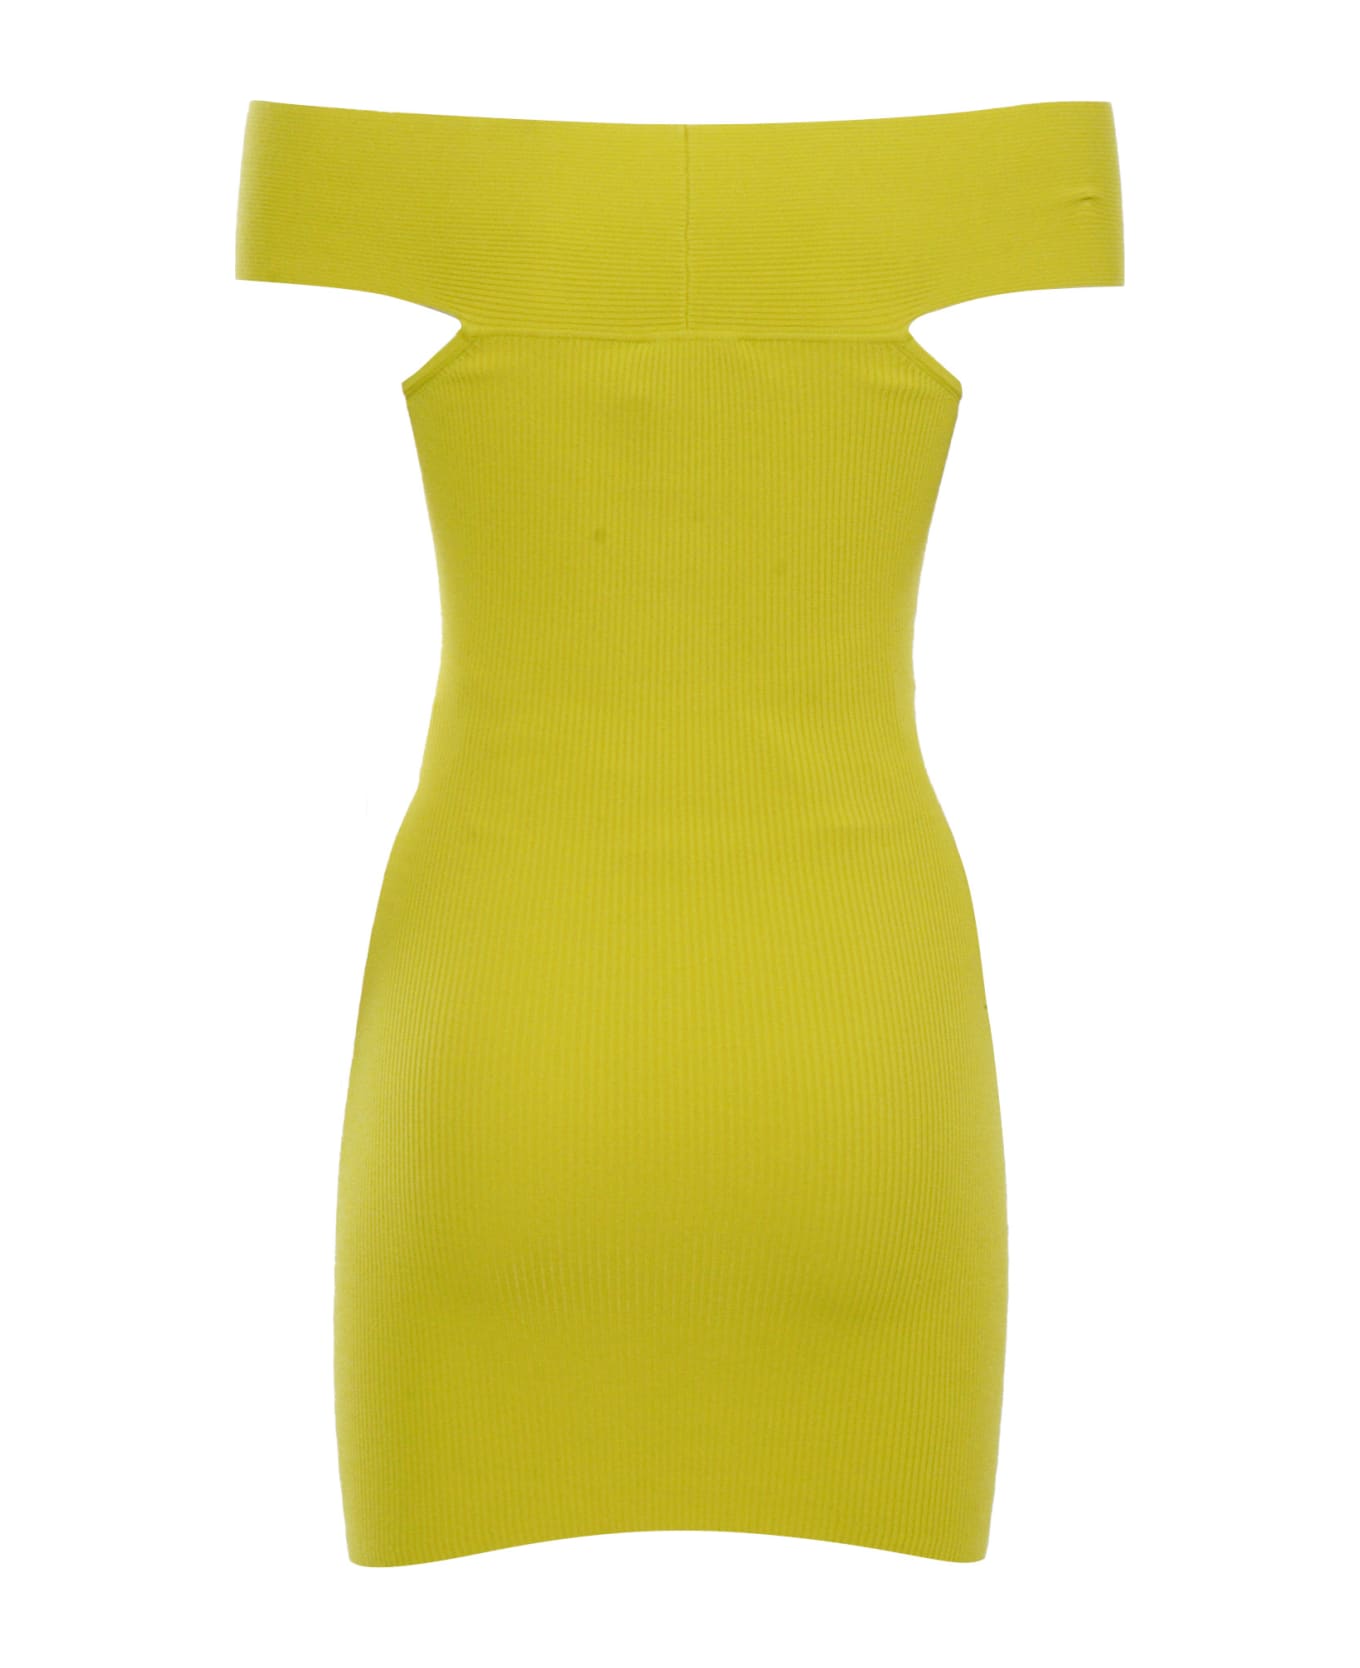 Elisabetta Franchi Yellow Knitted Dress - YELLOW